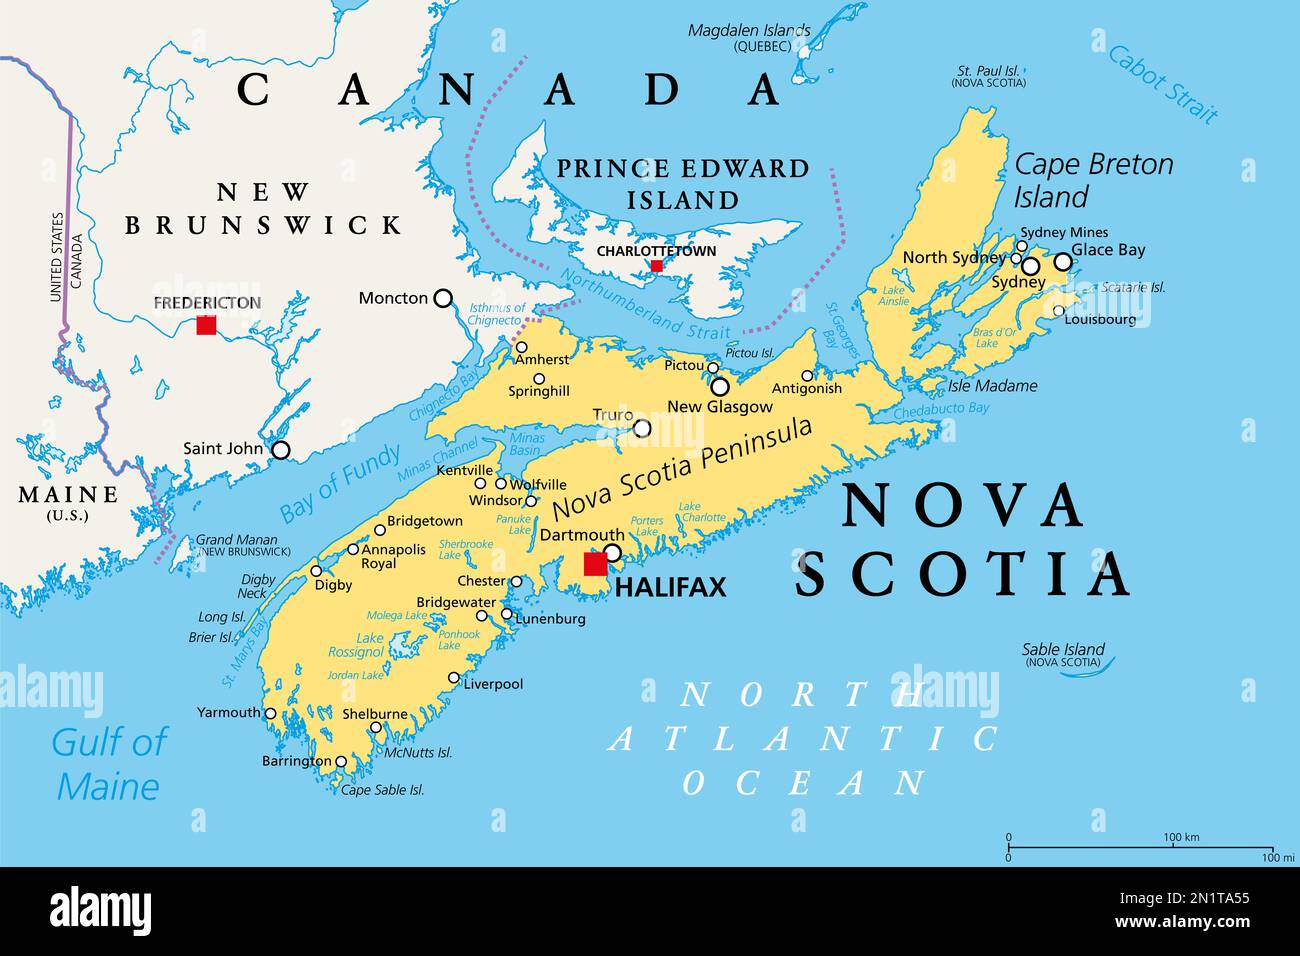 Nova Scotia, Maritime and Atlantic province of Canada, political map. Cape Breton Island and Nova Scotia Peninsula, with capital Halifax. Stock Photo